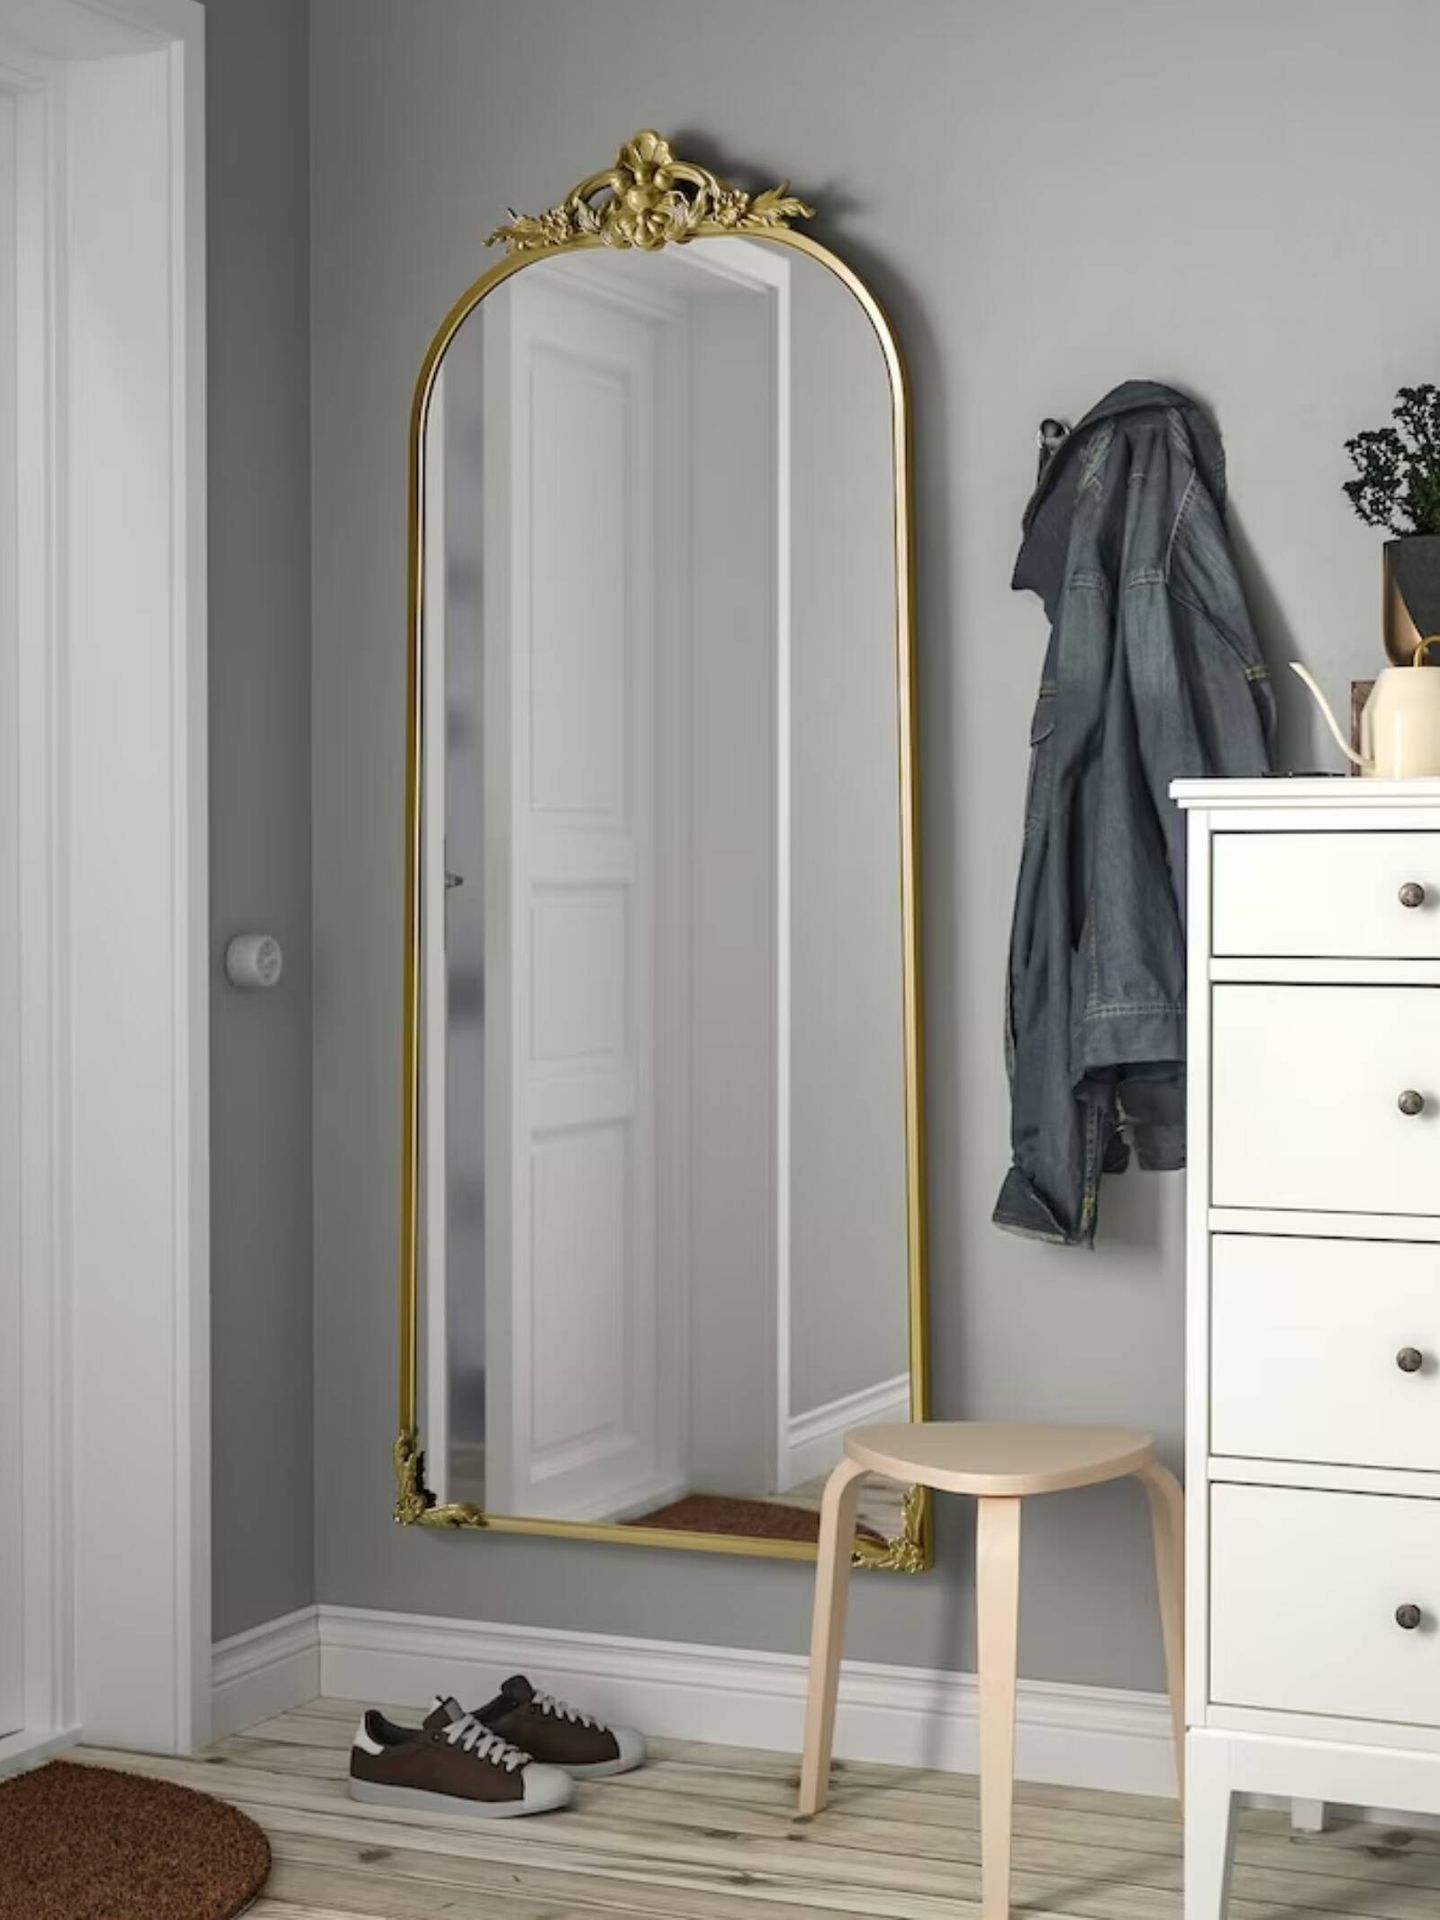 Un espejo dorado. (Cortesía/Ikea)